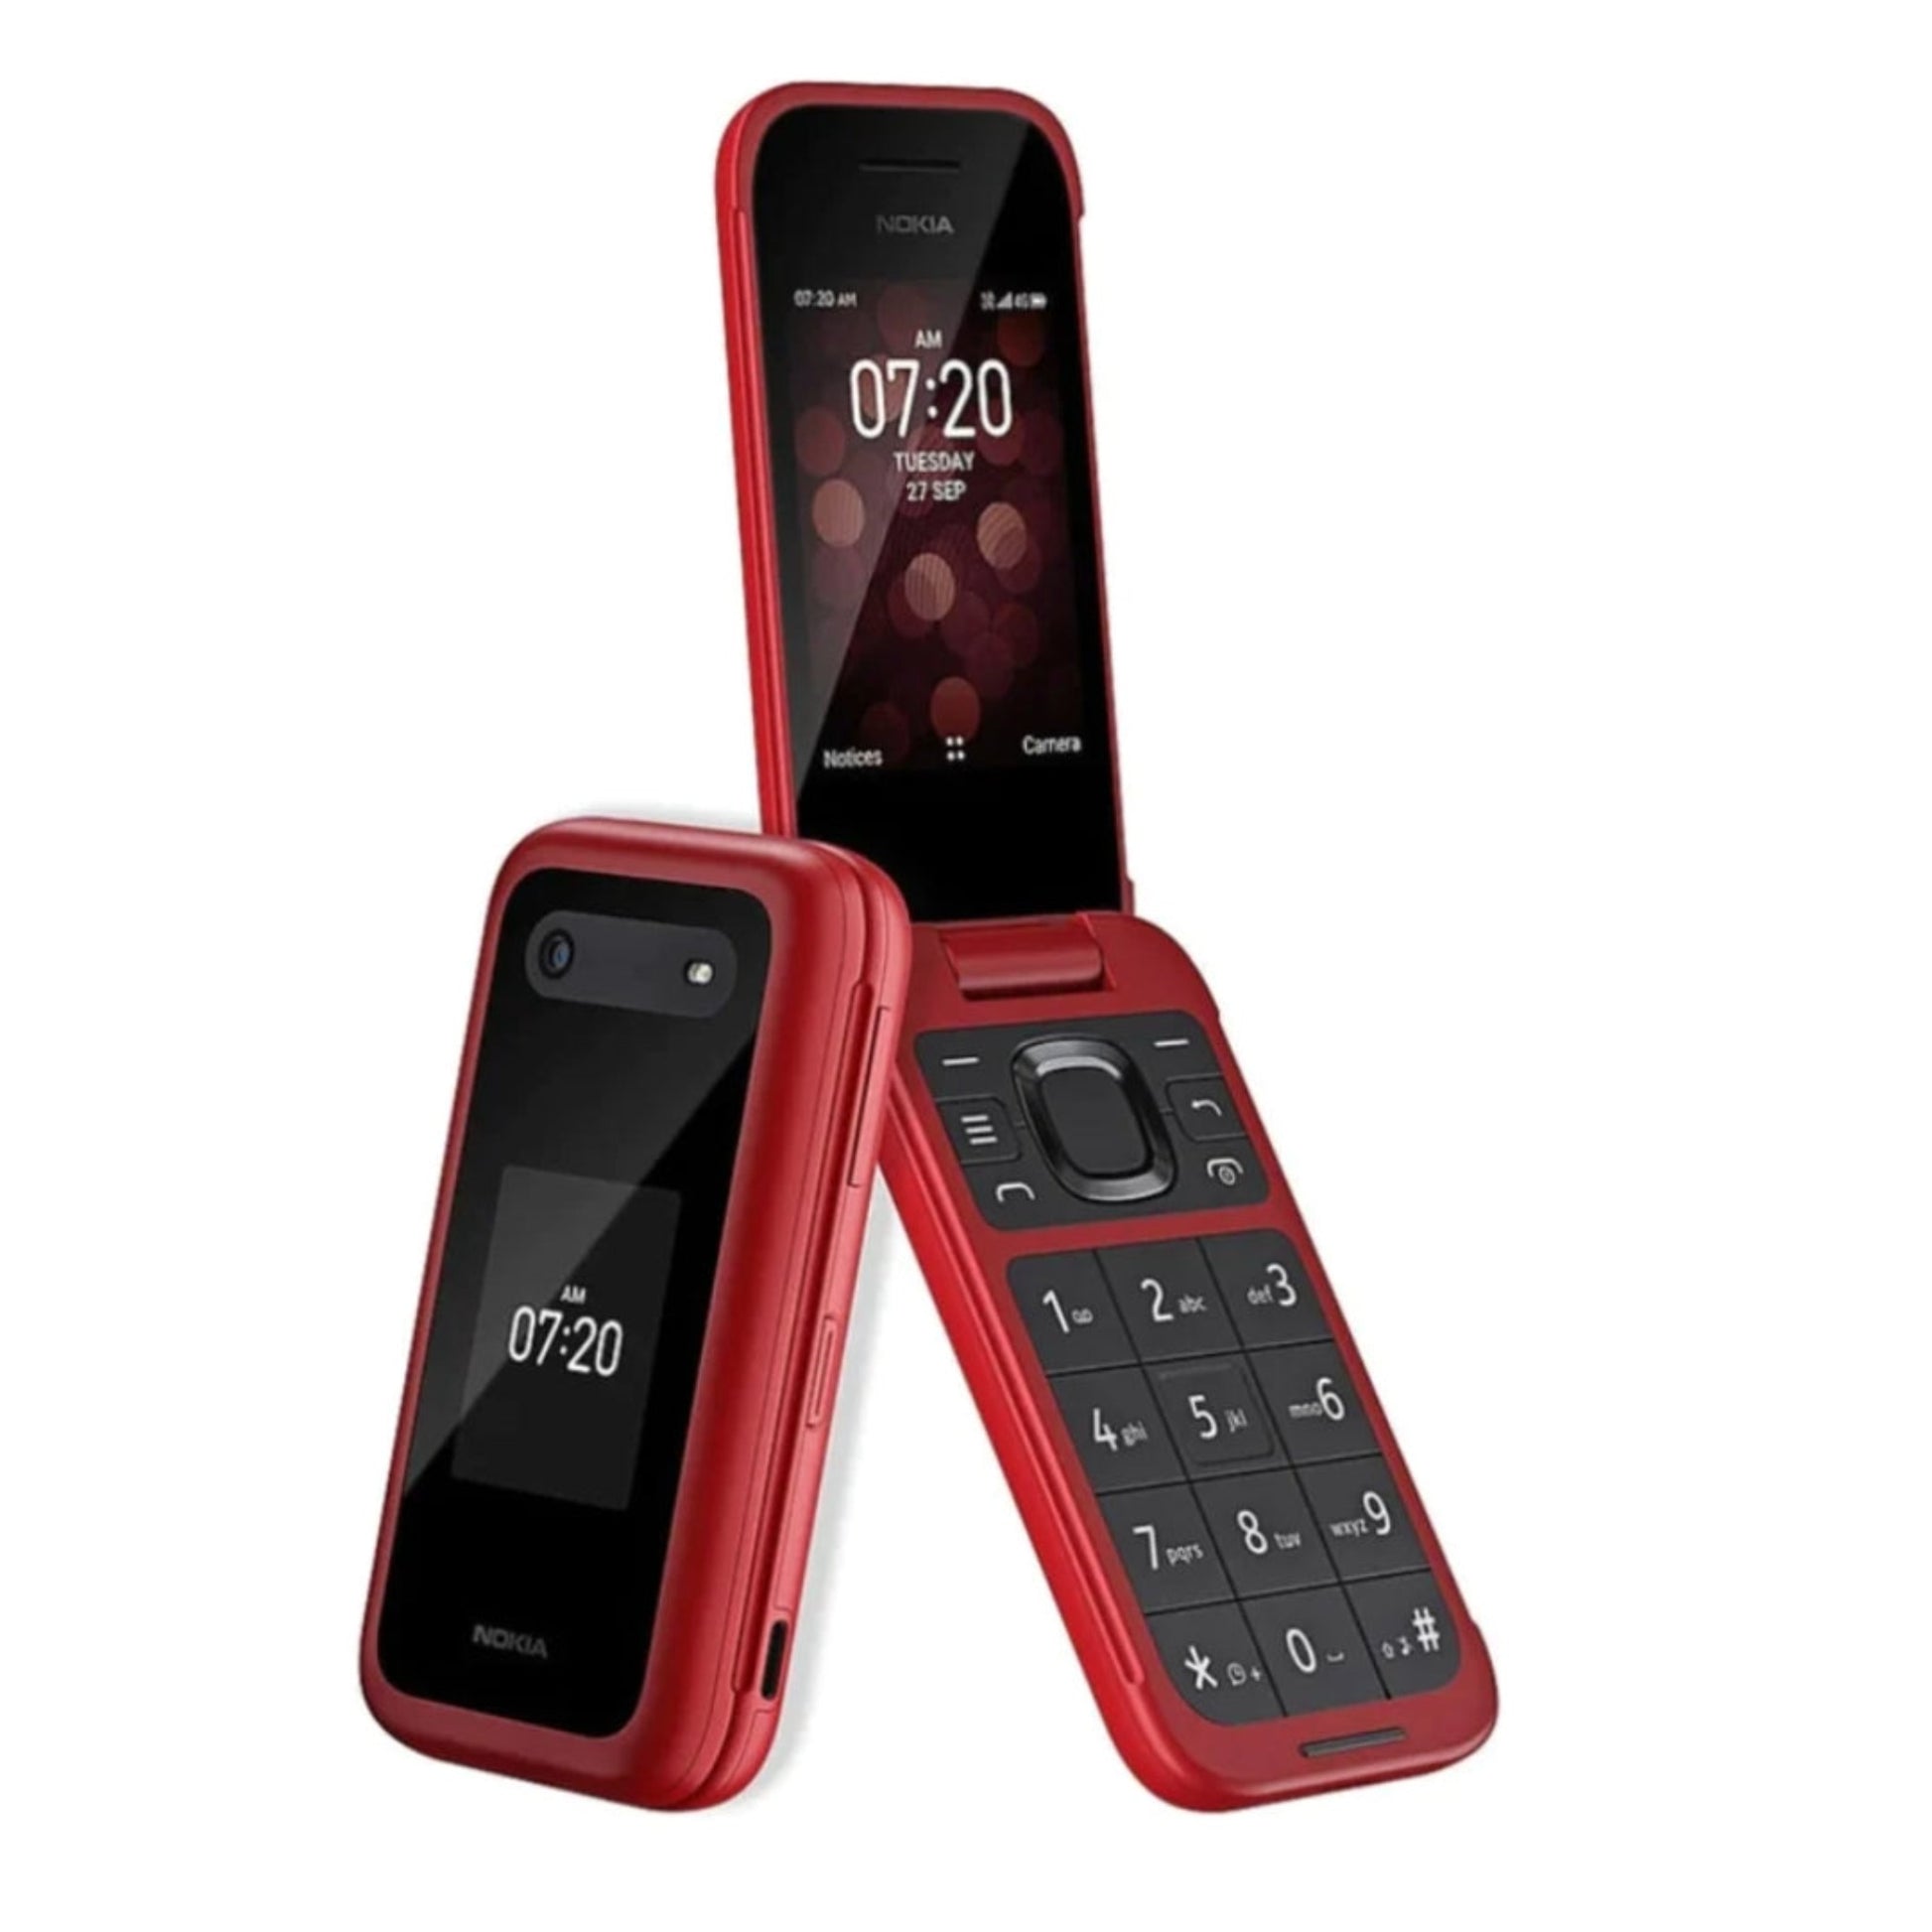 Nokia 2780 flip phone